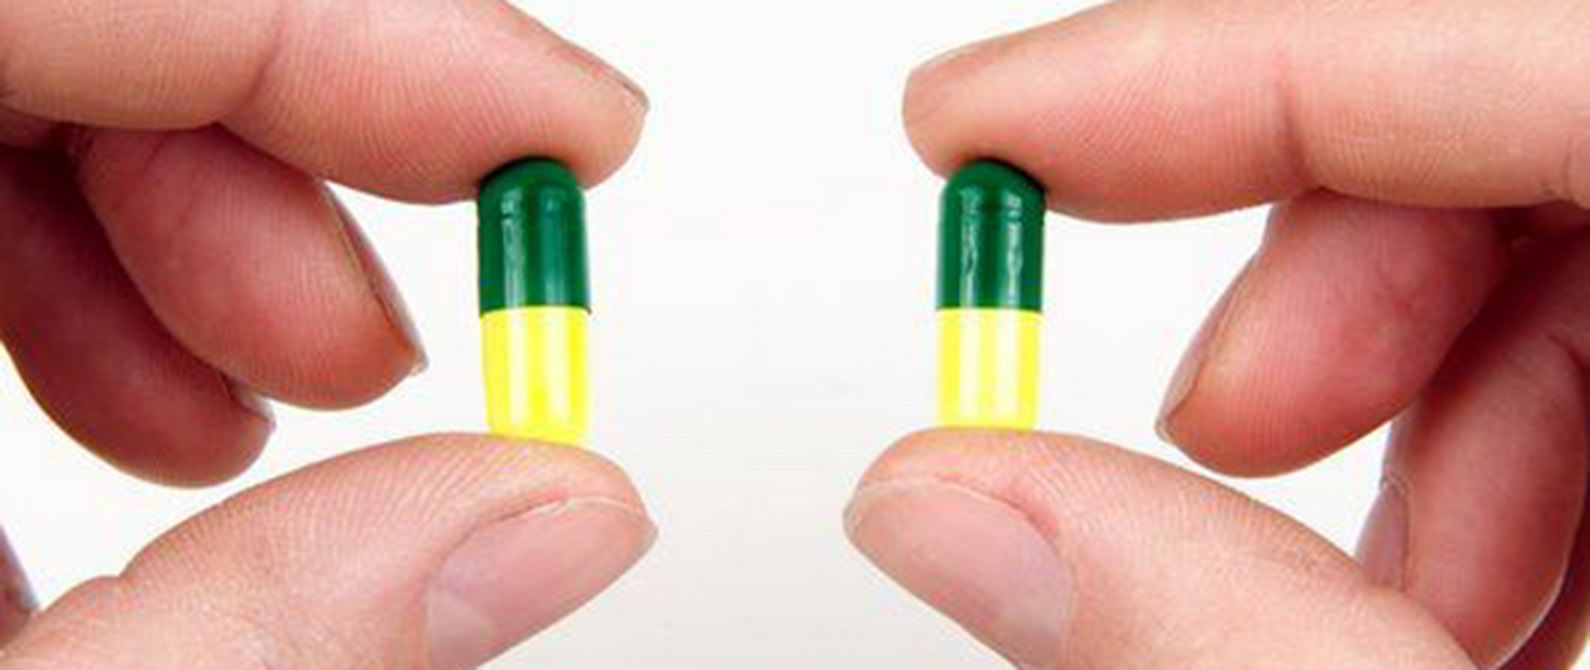 una foto comparativa de pastillas genuinas y falsas